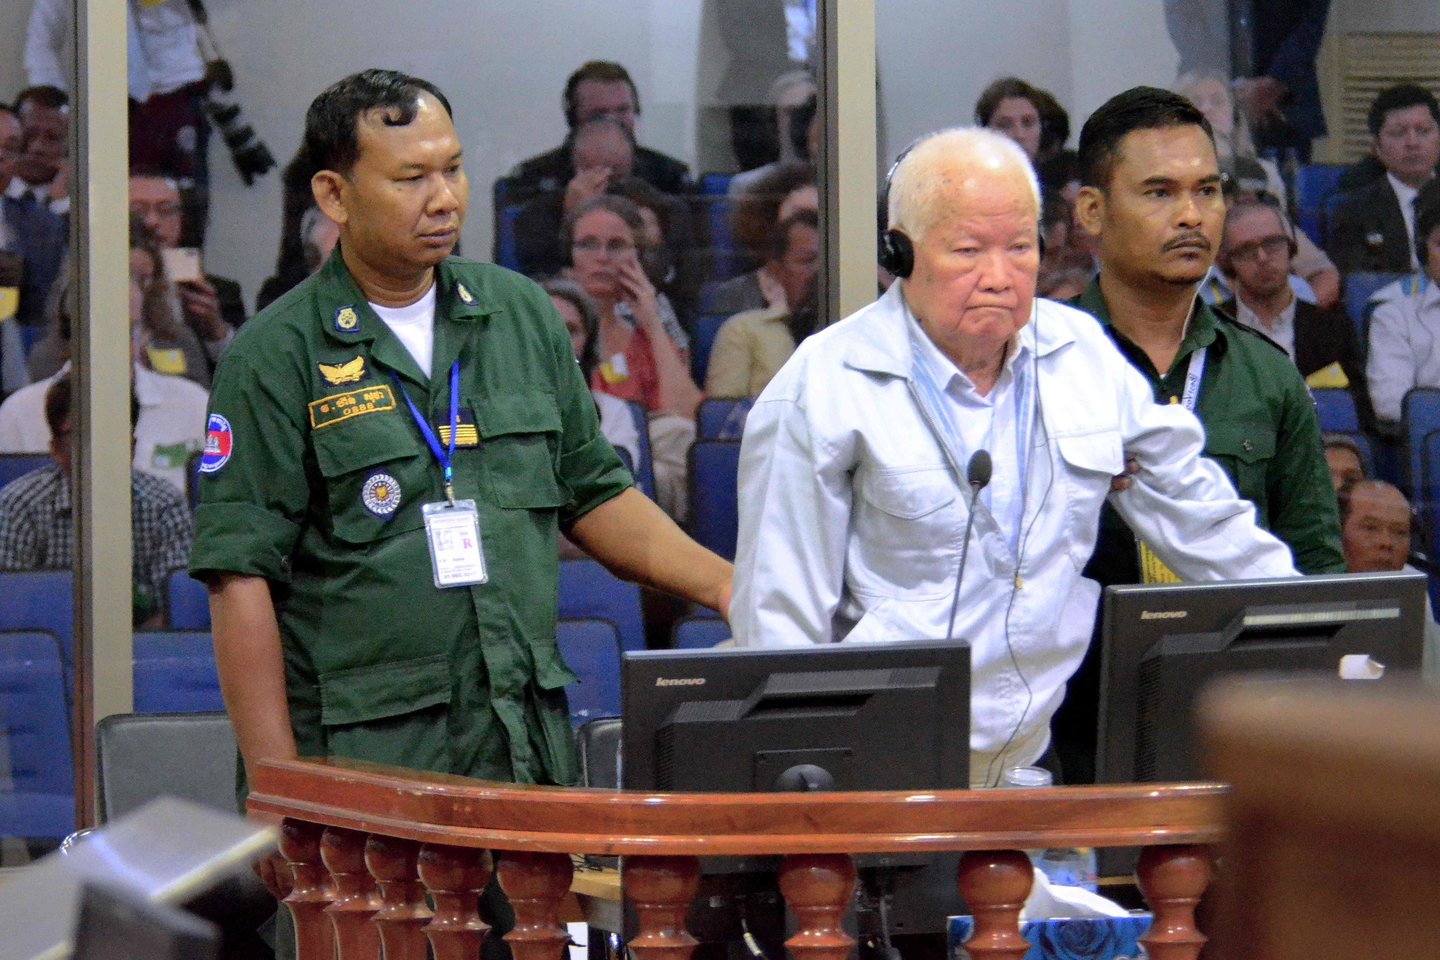  Kambodžos raudonųjų khmerų režimas vykdė genocidą per teroru paženklintą savo valdymo laikotarpį 1975–1979 metais, penktadienį istorinėje nutartyje paskelbė Jungtinių Tautų remiamas teismas.<br>AFP/Scanpix nuotr.